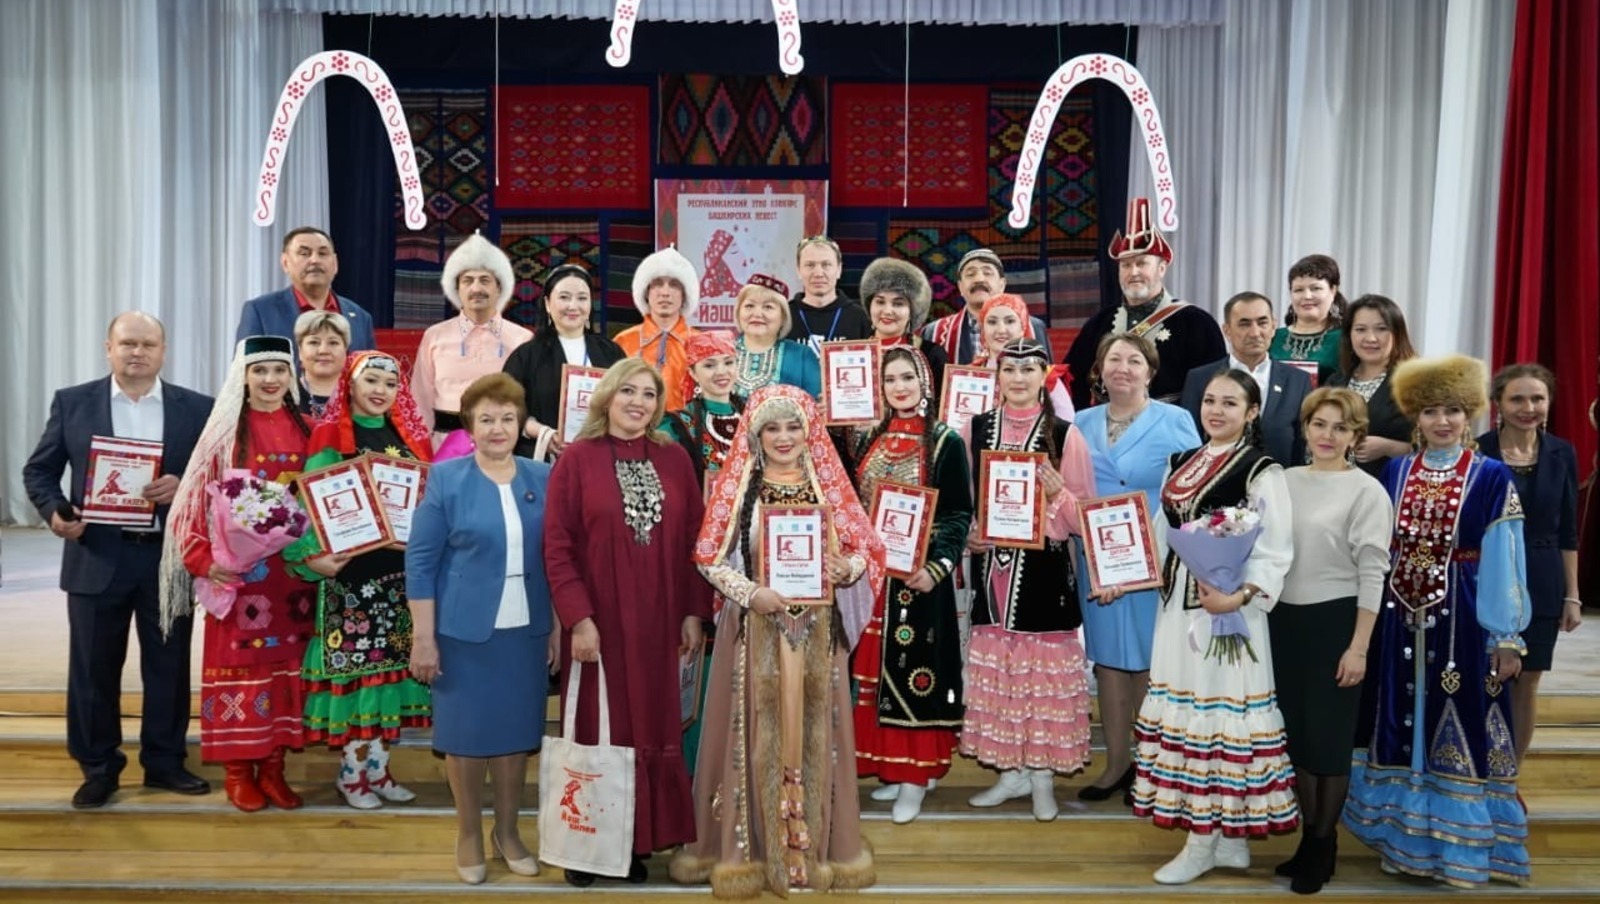 Гран-при этноконкурса «Йәш килен» завоевала жительница Уфимского района